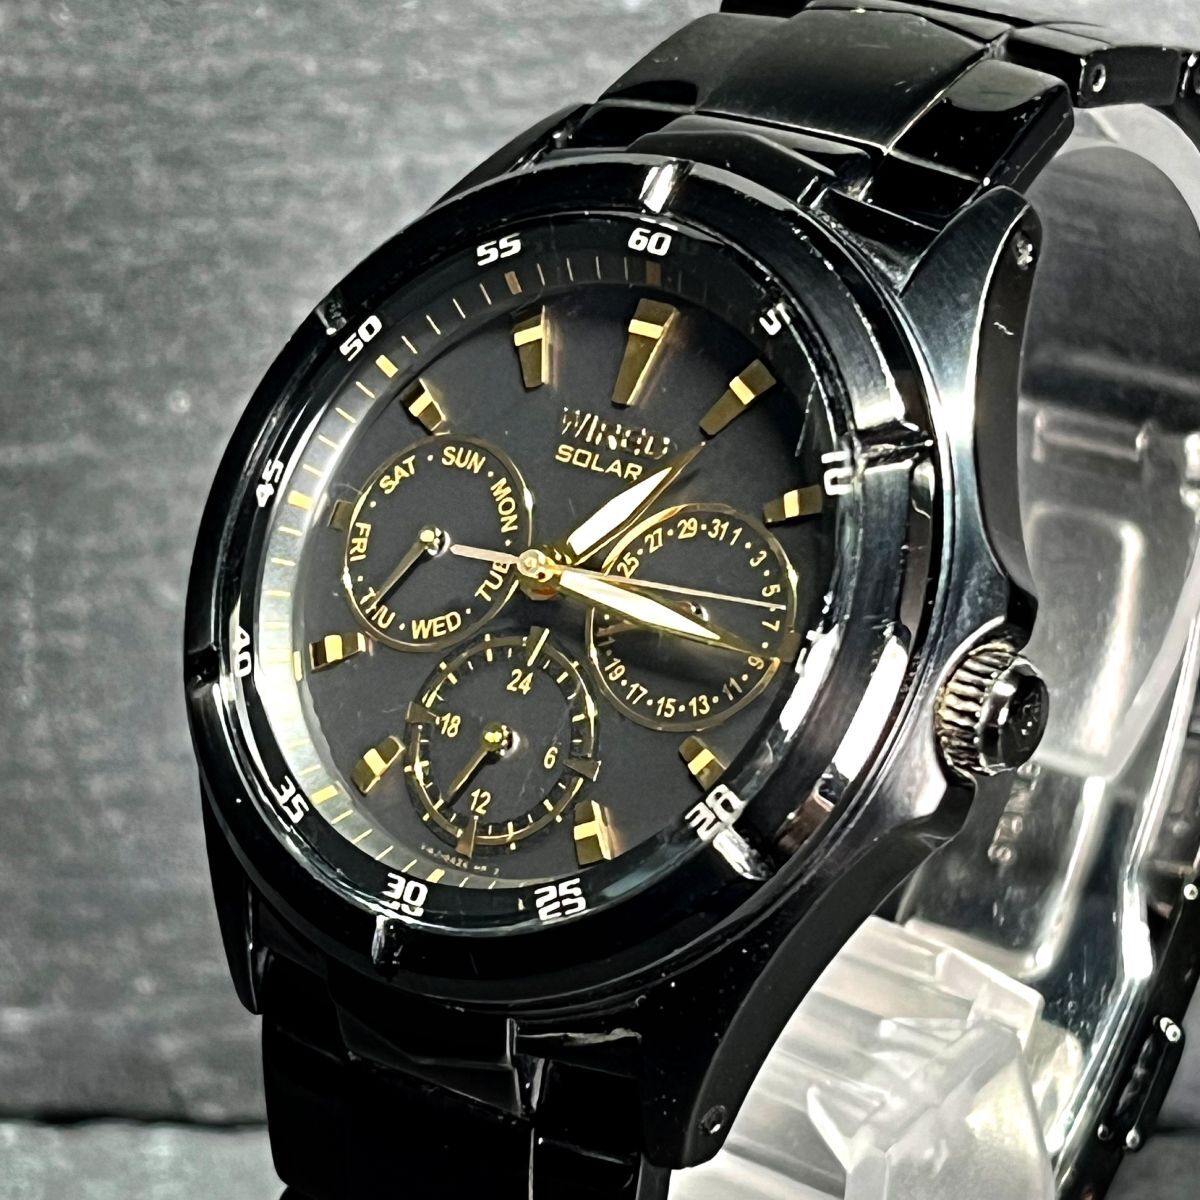 SEIKO セイコーWIRED ワイアード NEW STANDARD ニュースタンダード ソーラーモデル AGAD053 メンズ 腕時計 アナログ ブラック×ゴールド_画像2